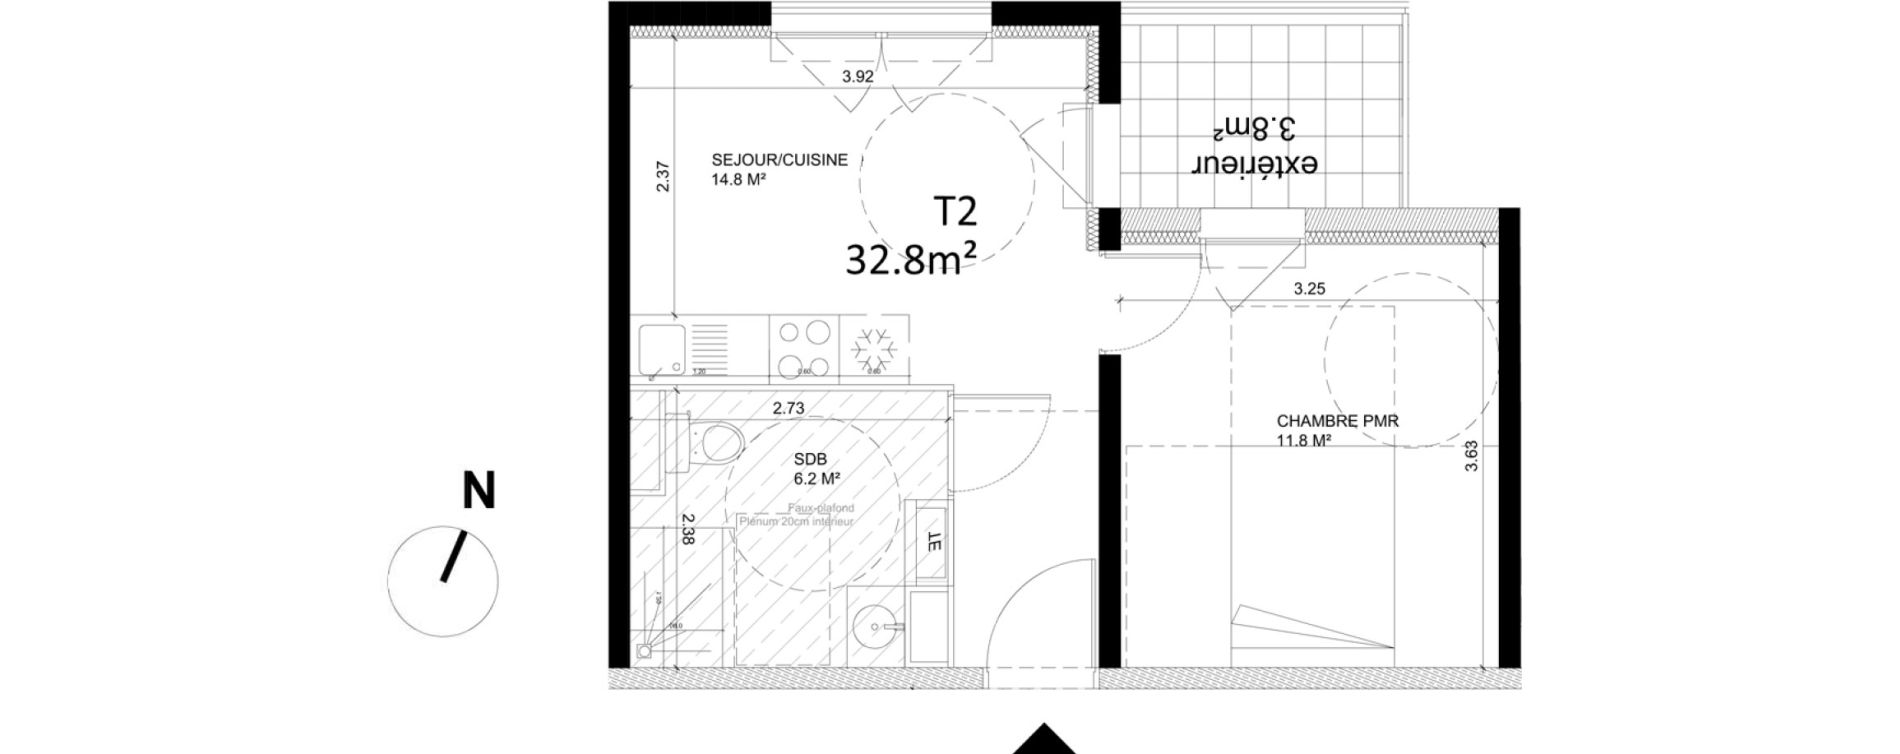  Appartement  T2 de 32  80m2 RDC N Oxyg ne Avignon ref 080